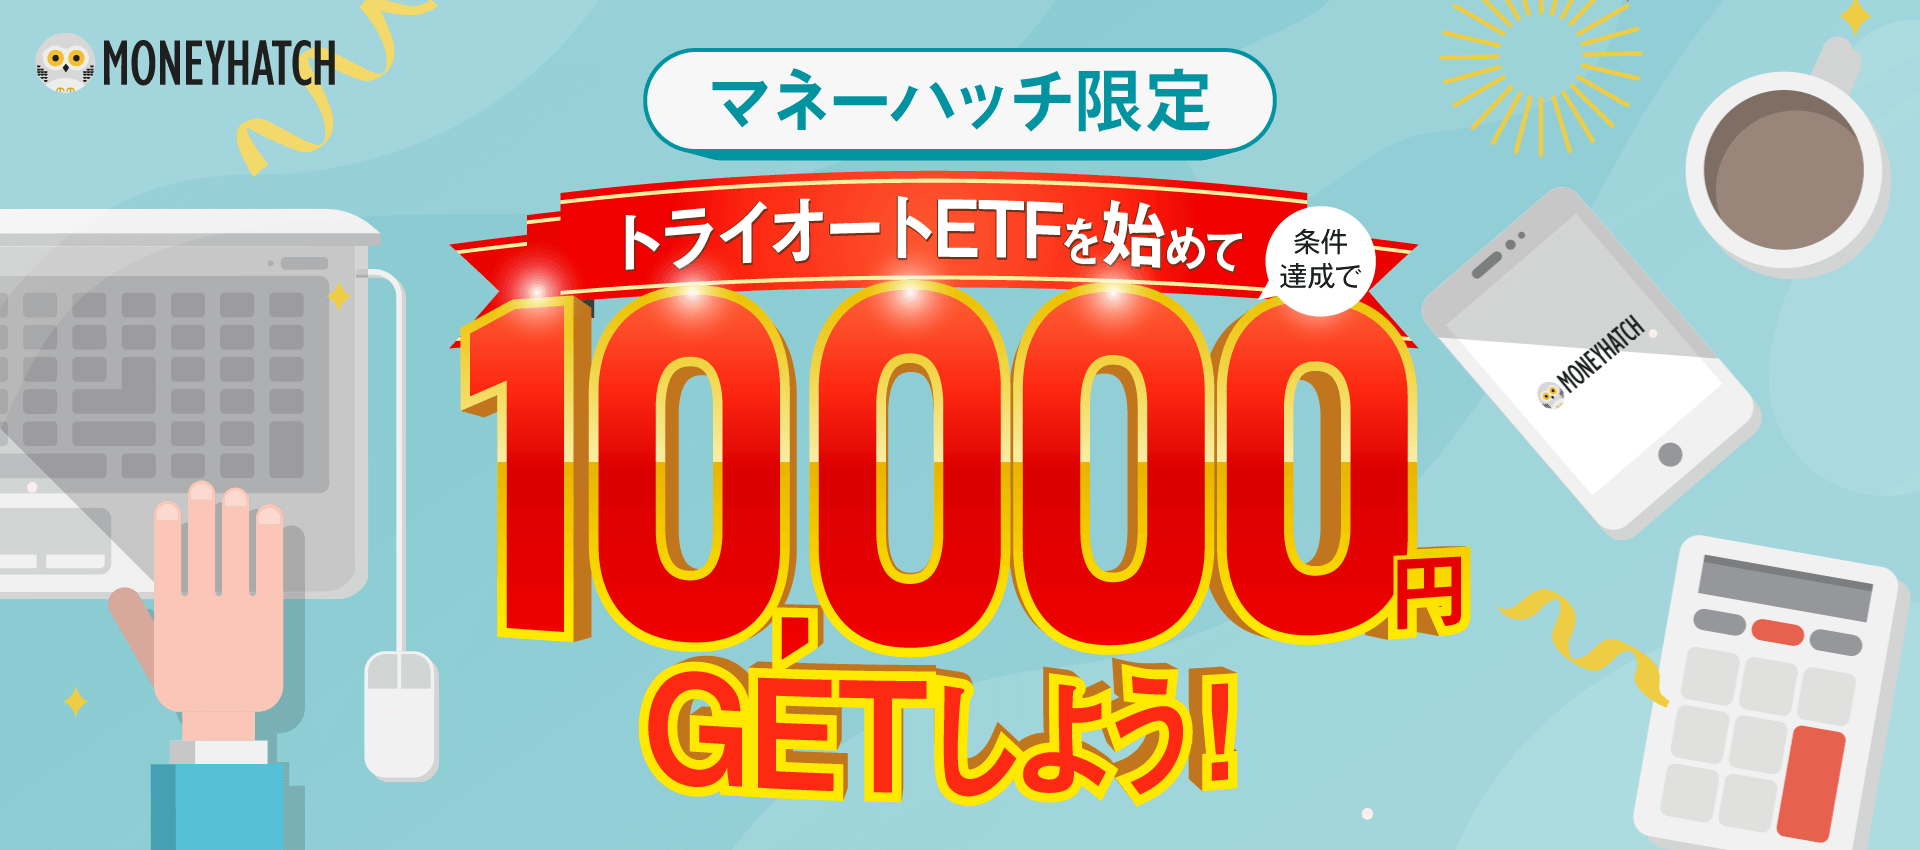 トライオートETFを始めて10,000円GETしよう